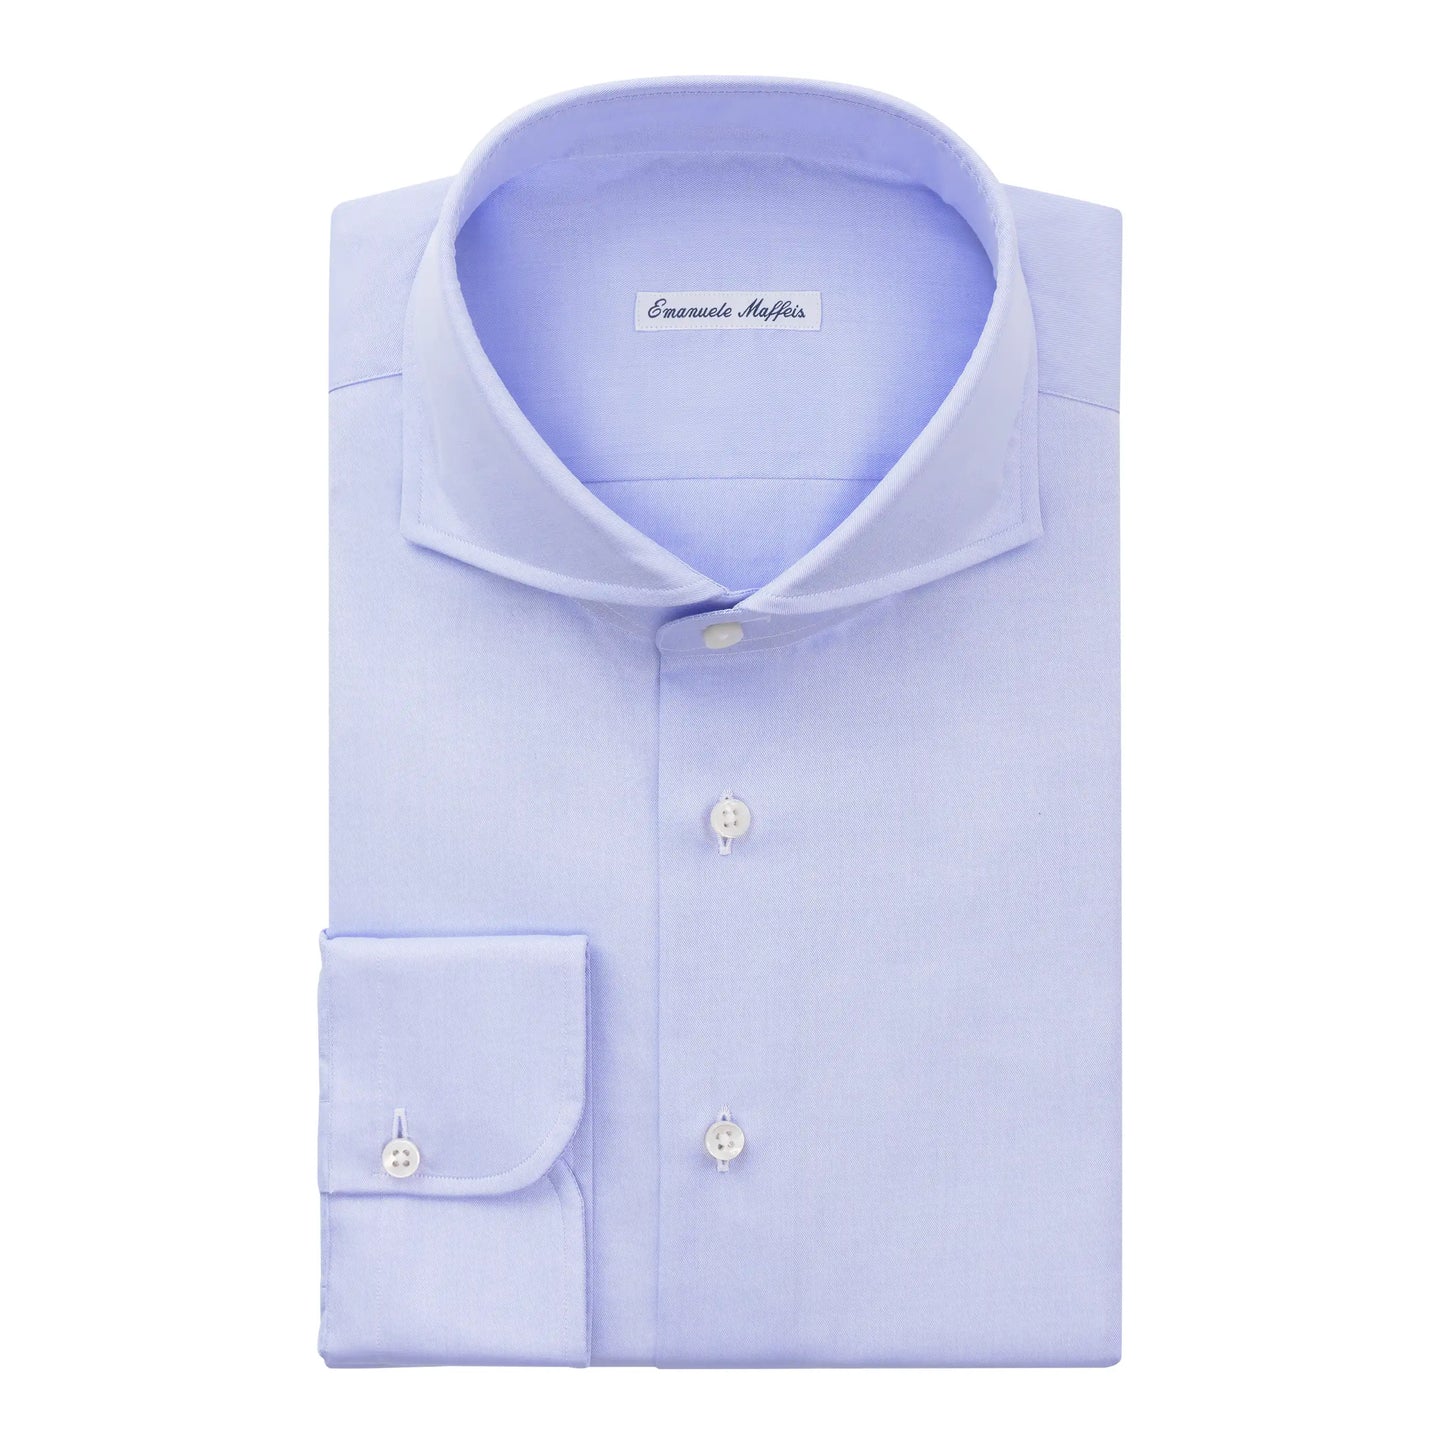 Finest Cotton Light Blue Shirt with Shark Collar